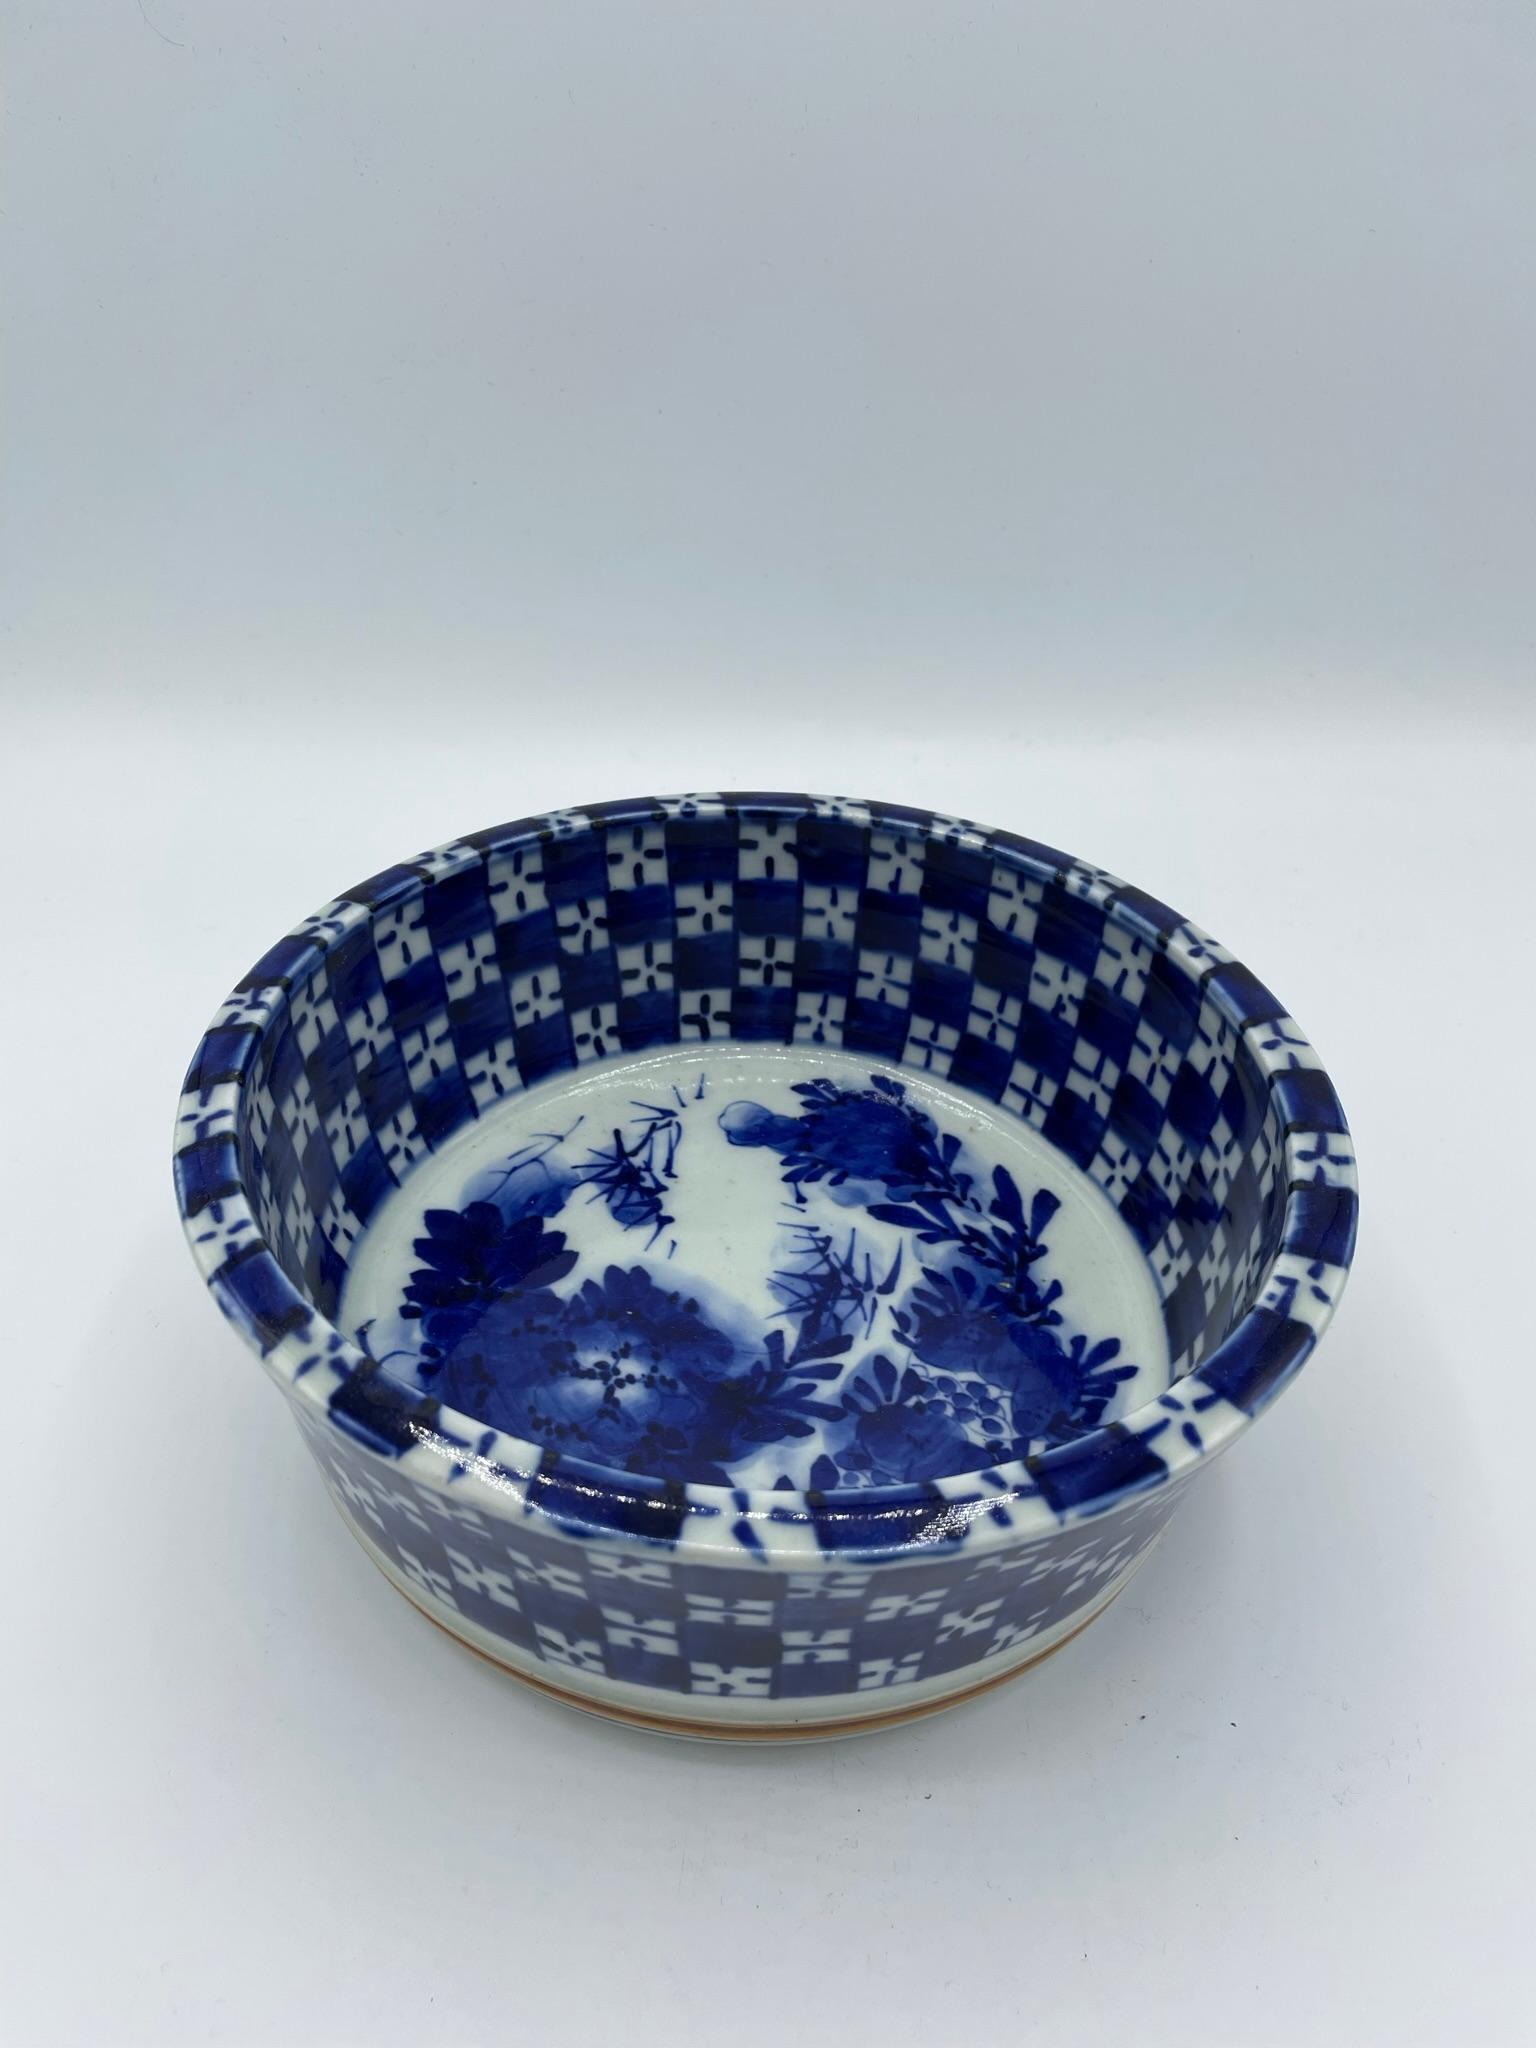 Diese Schale wurde in Japan um 1920 in der Taisho-Ära hergestellt.
Sie kann als Futterschale, aber auch als Blumenvase verwendet werden.
Die Farbe ist blau und weiß, die Unterseite ist braun.
Es ist handbemalt und ein schönes